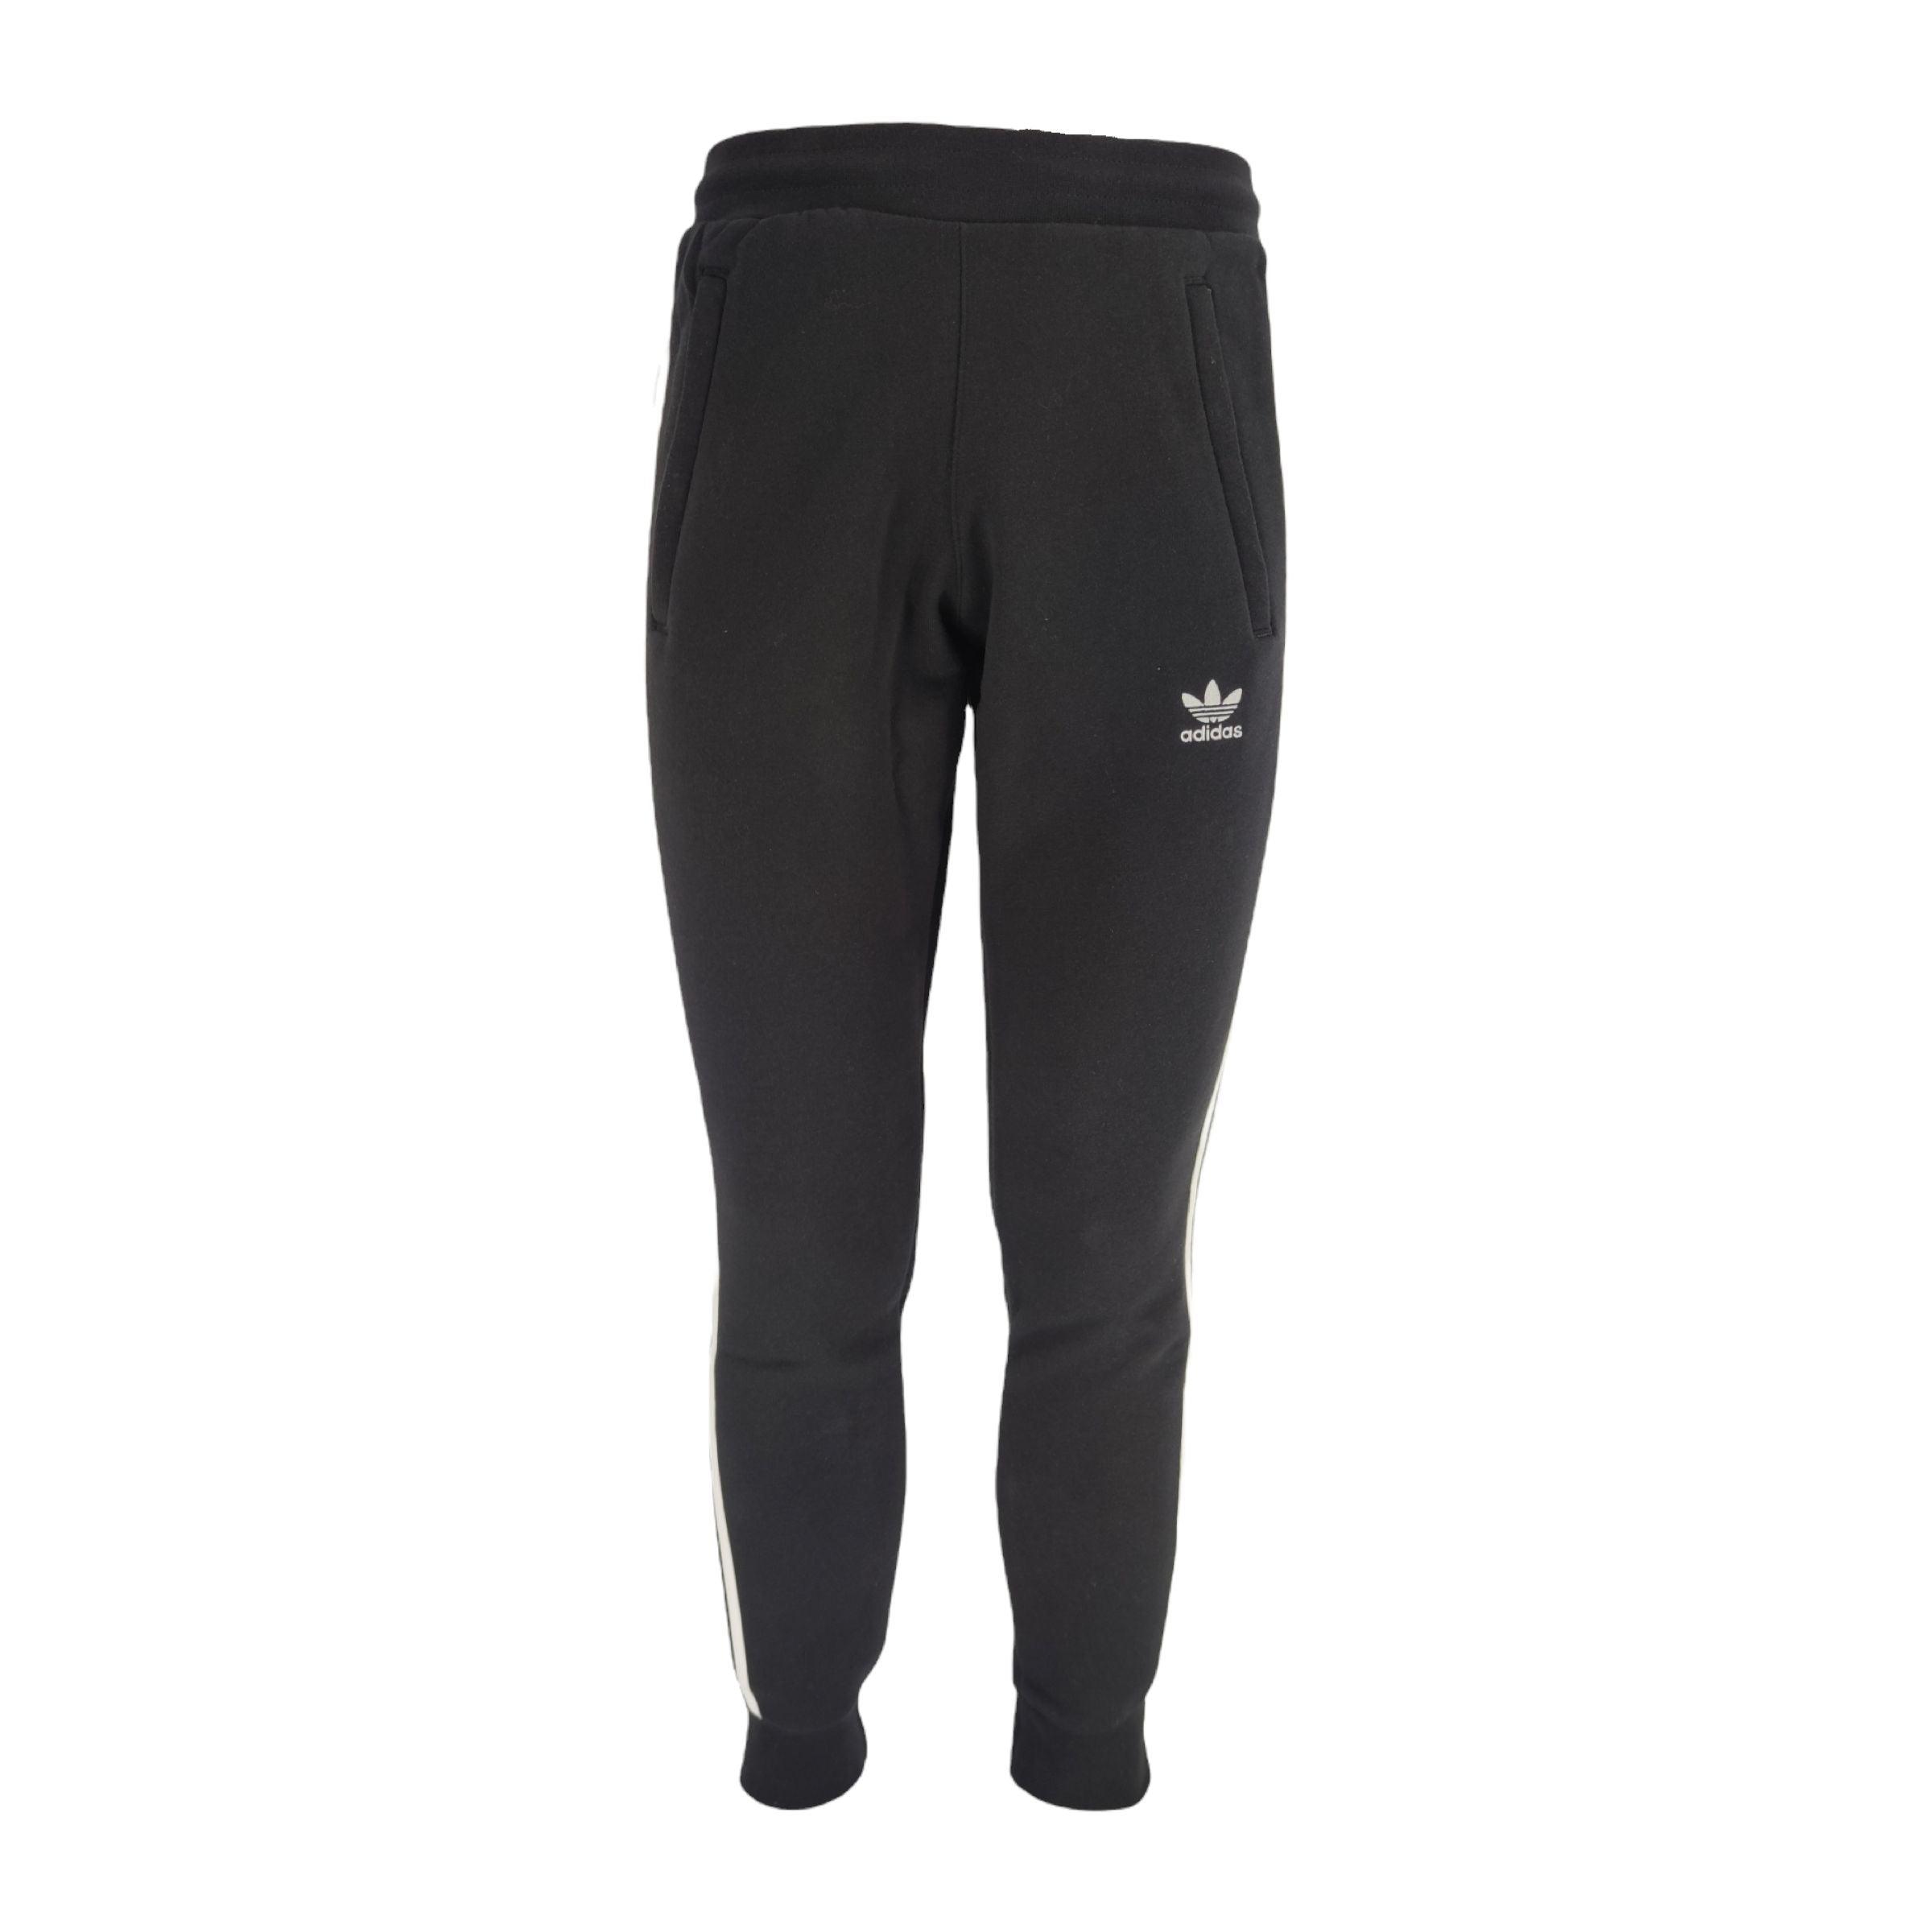 Adidas | Pantaloni 3 Stripes Uomo Black/White - Fabbrica Ski Sises